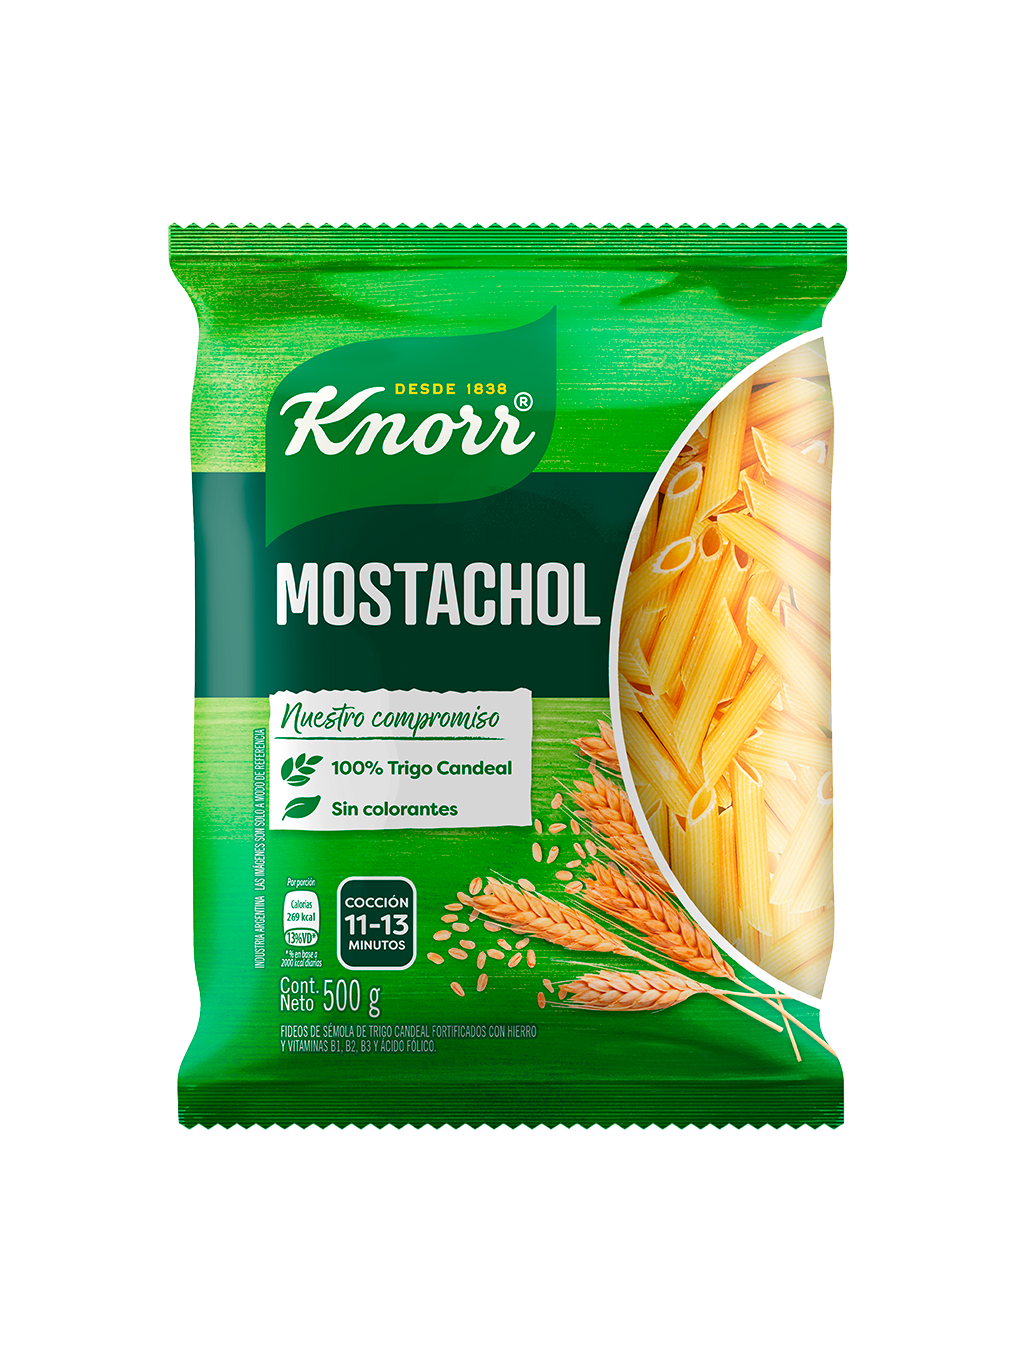 Imagen de envase Pasta Mostachol Knorr